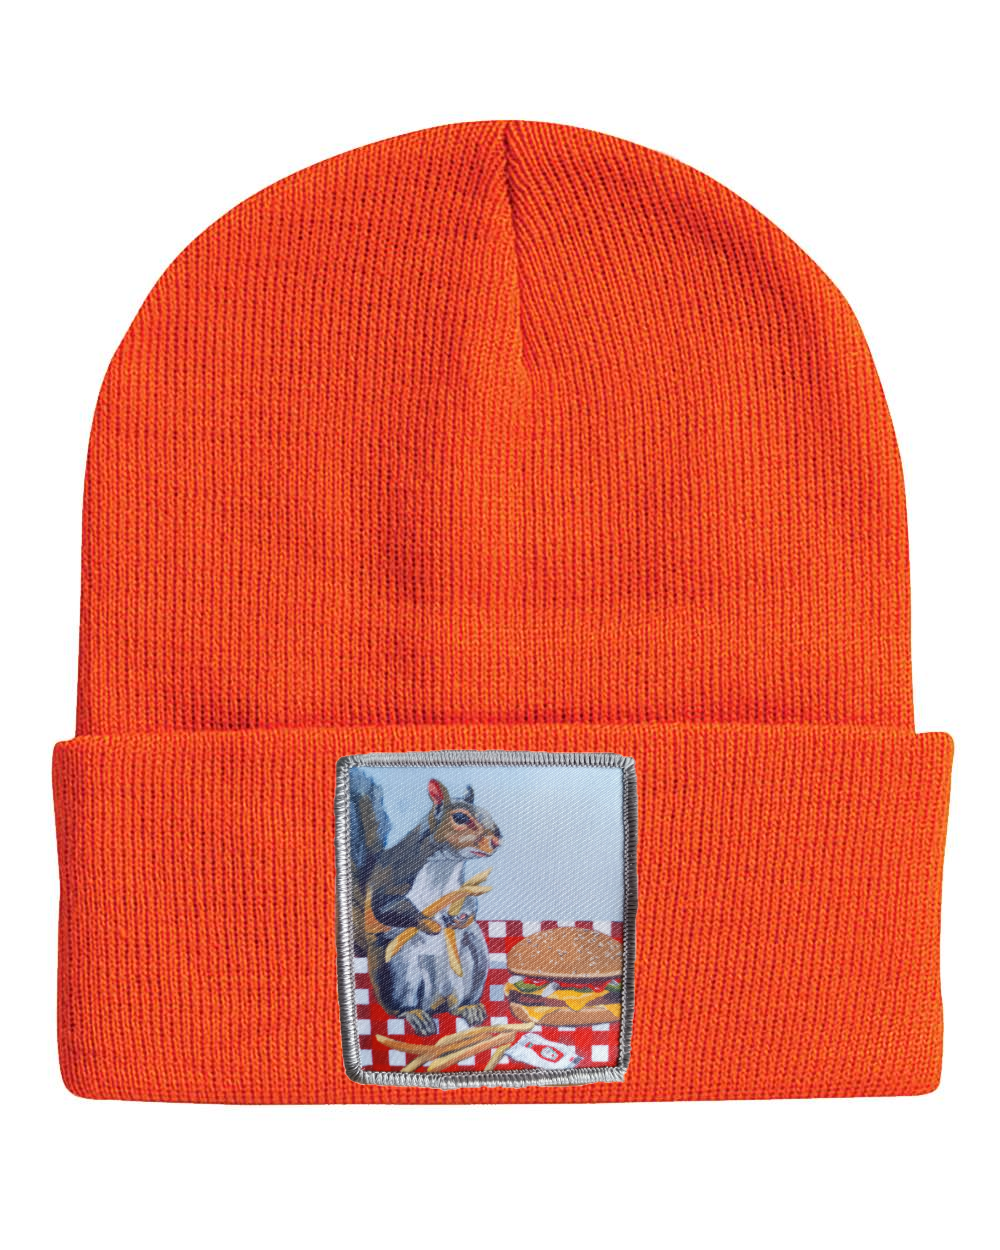 Squirrel Burger Beanie Hats Flyn_Costello_Art Neon Orange  